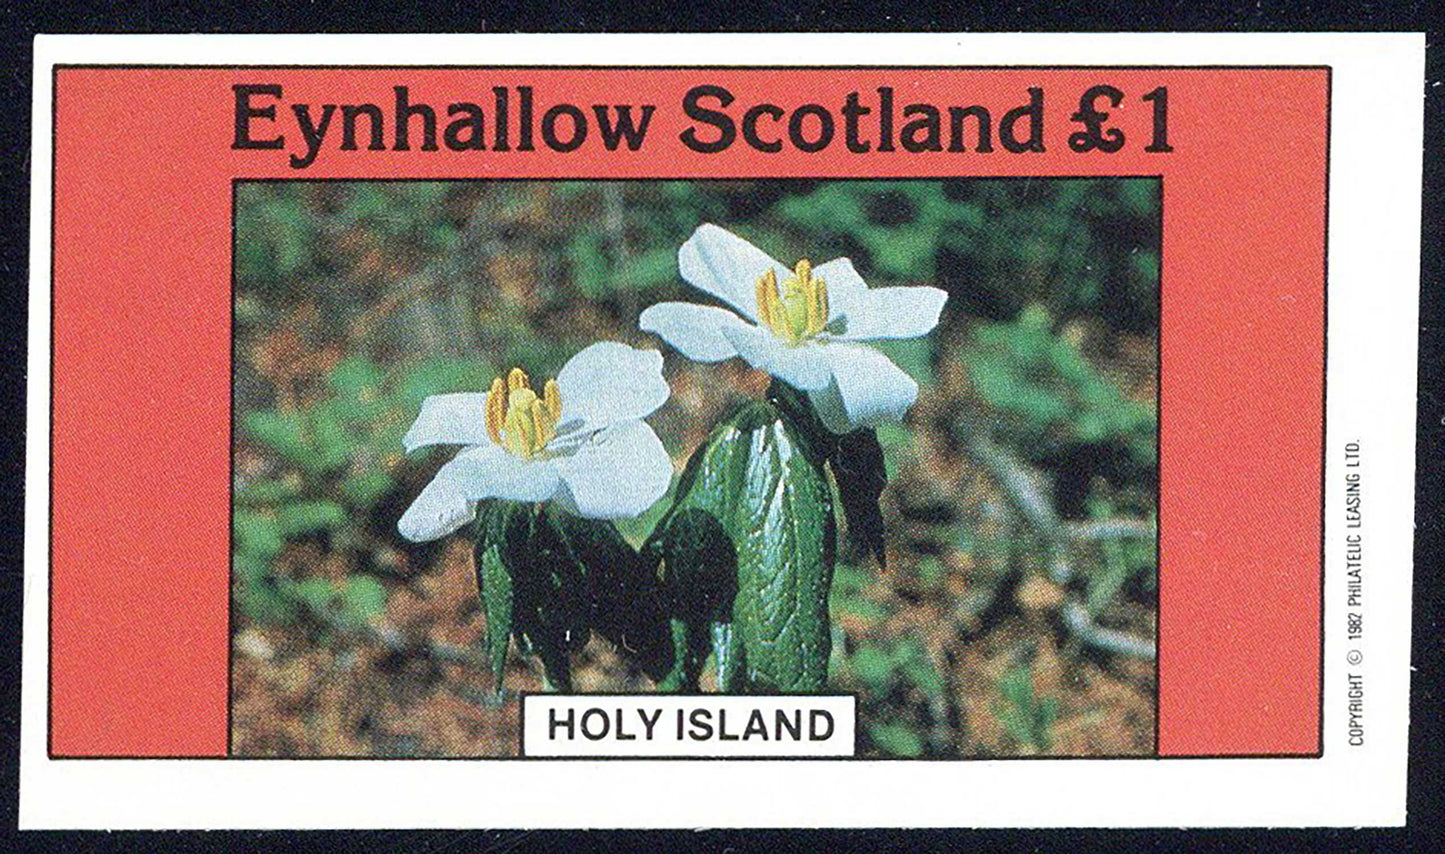 Eynhallow Flower Mixtures £1